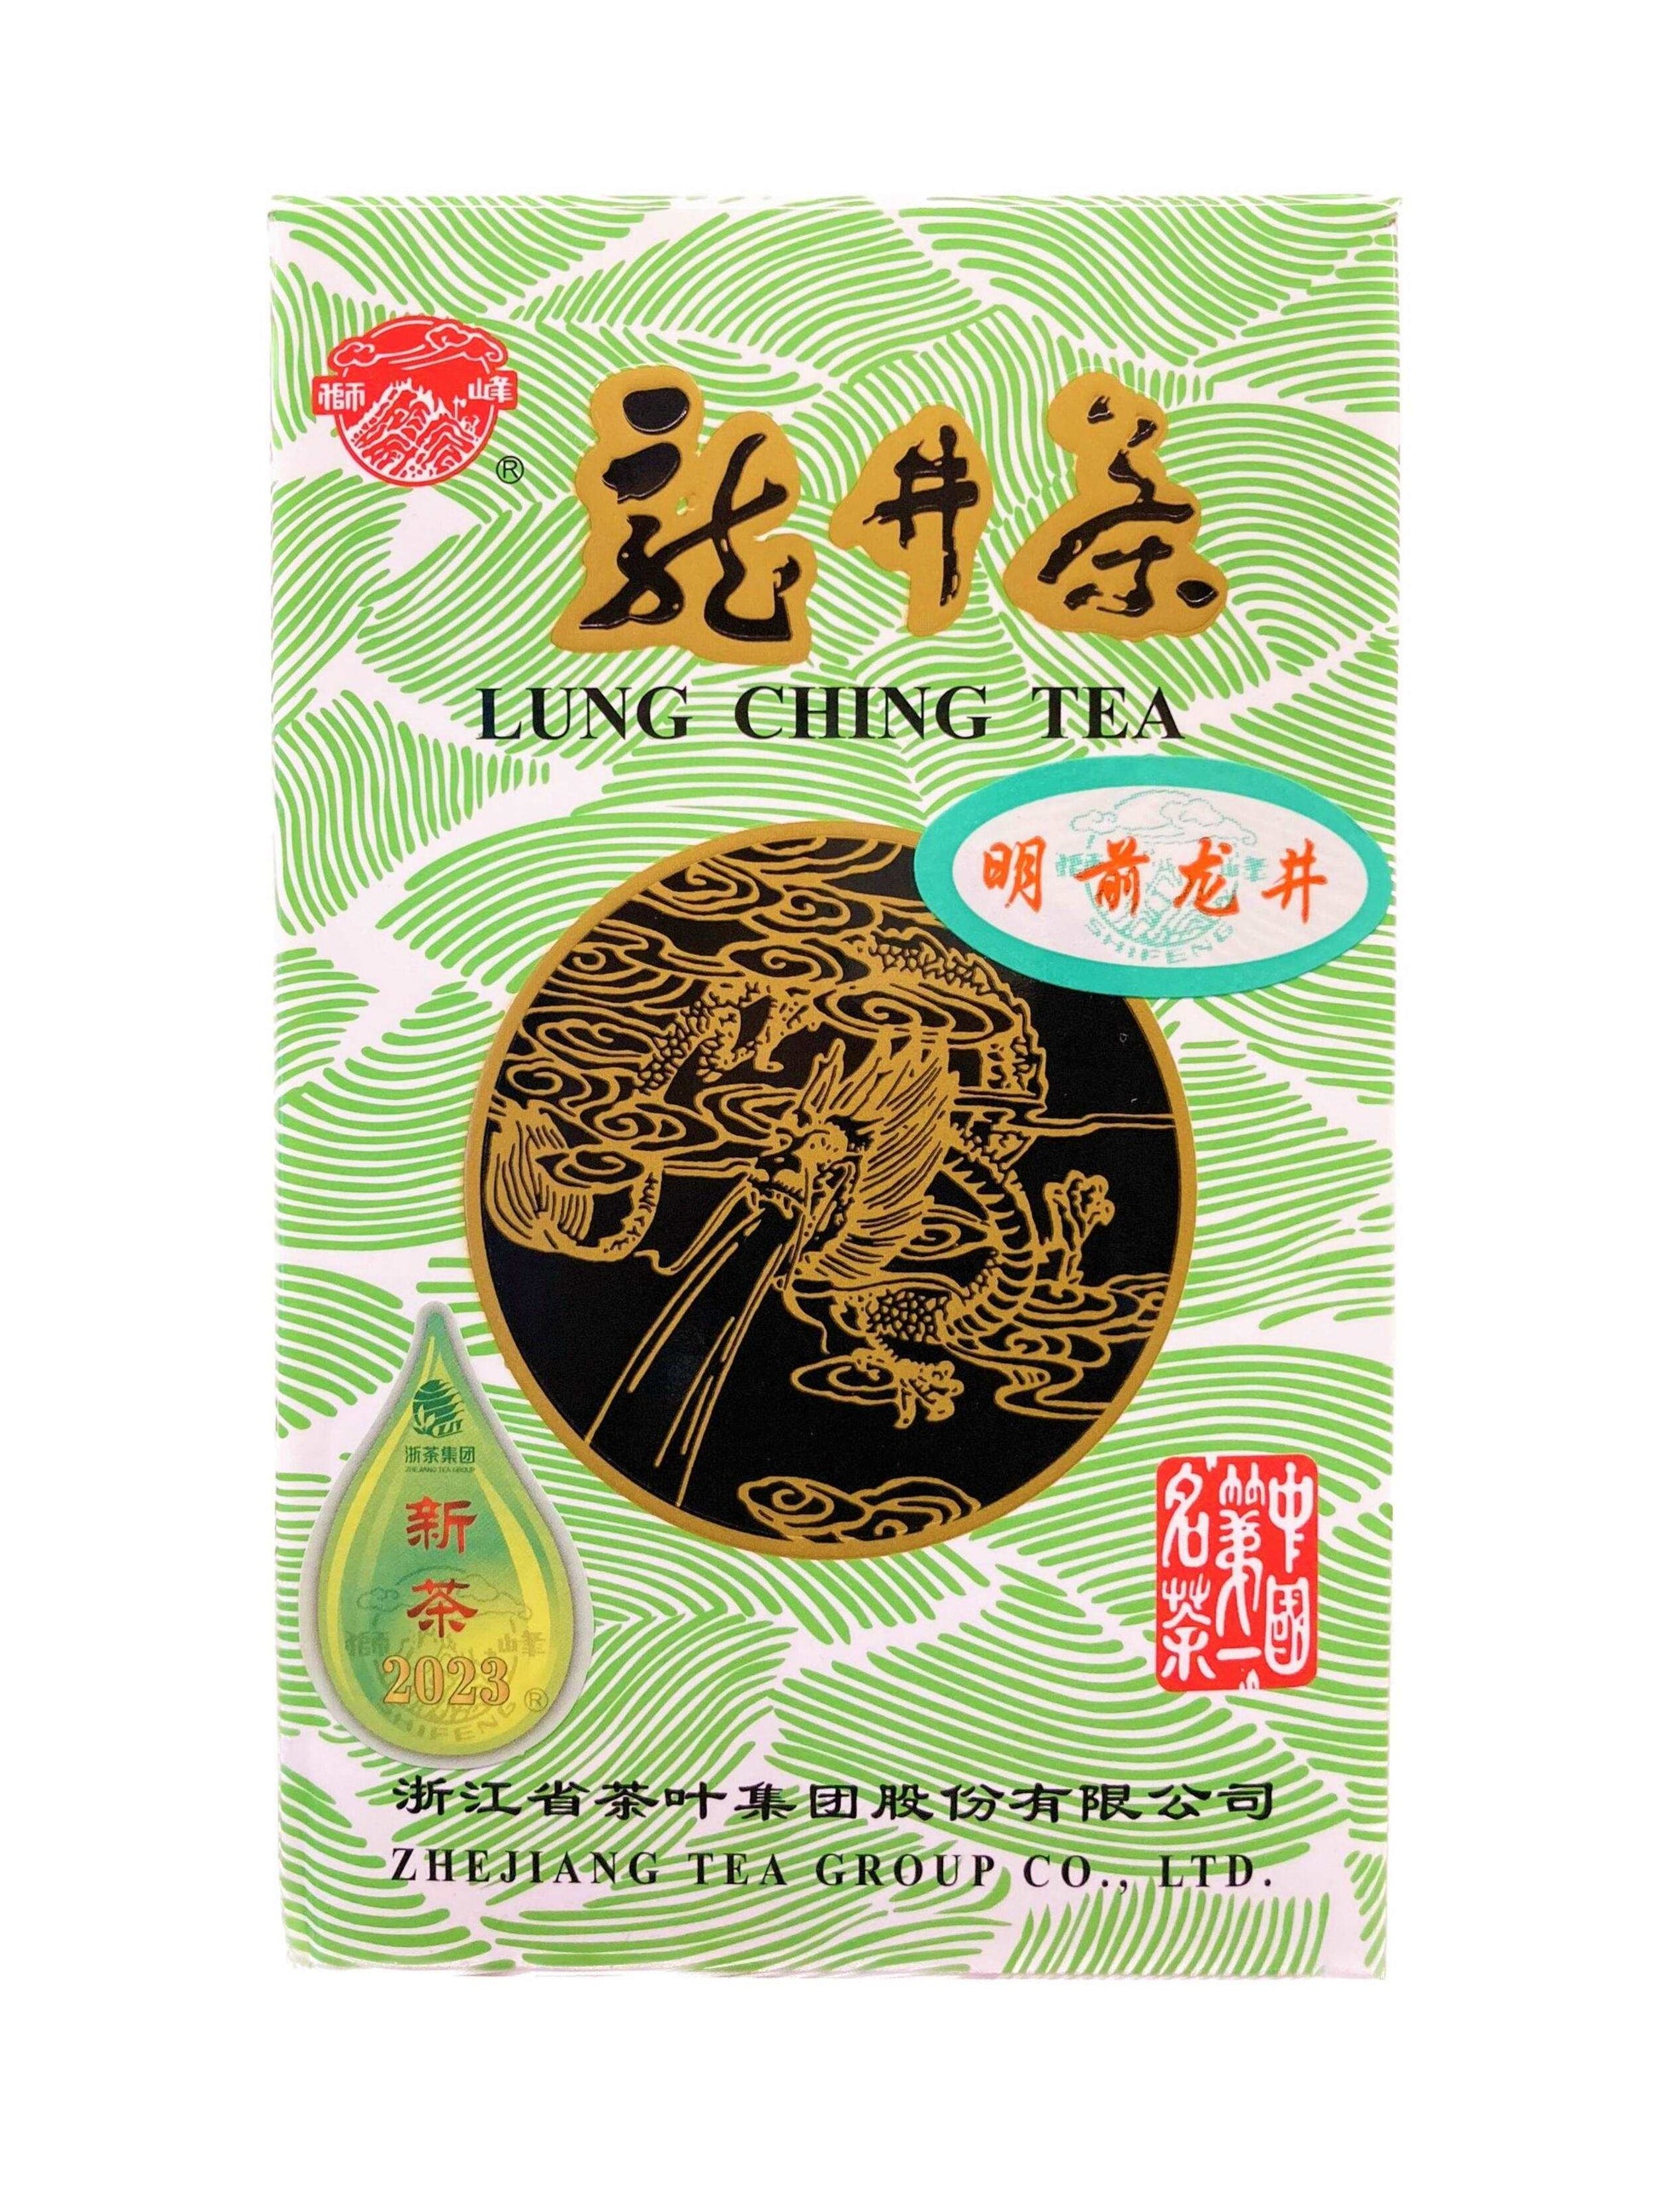 明前龍井 Green Tea - Premium Grade Lung Ching Tea (Pre-Qingming Dragon Well)